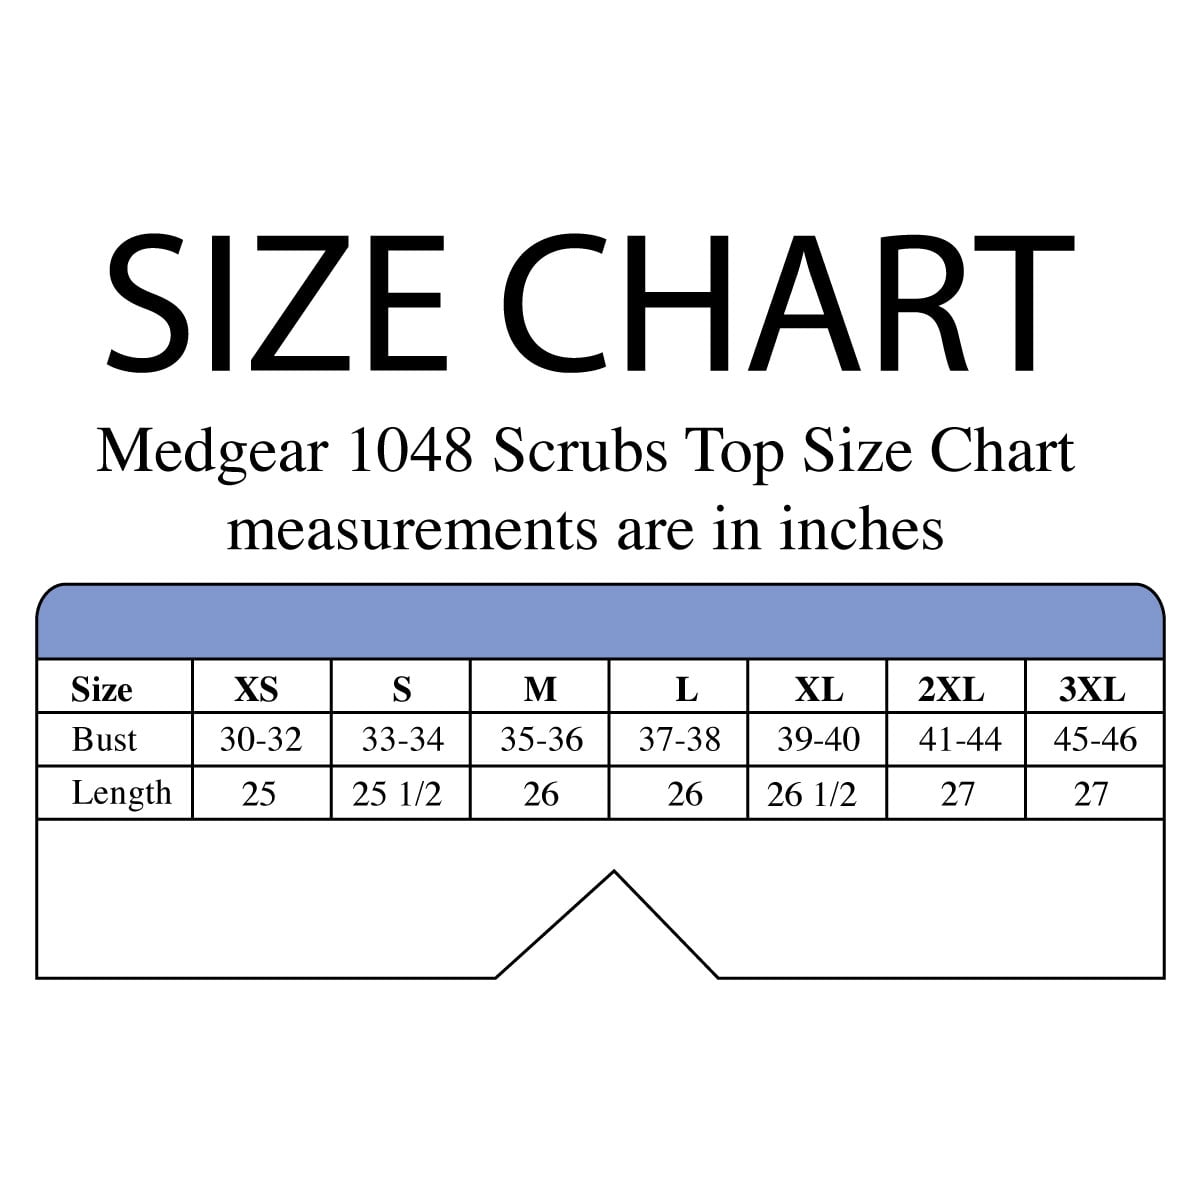 Medgear Scrubs Size Chart